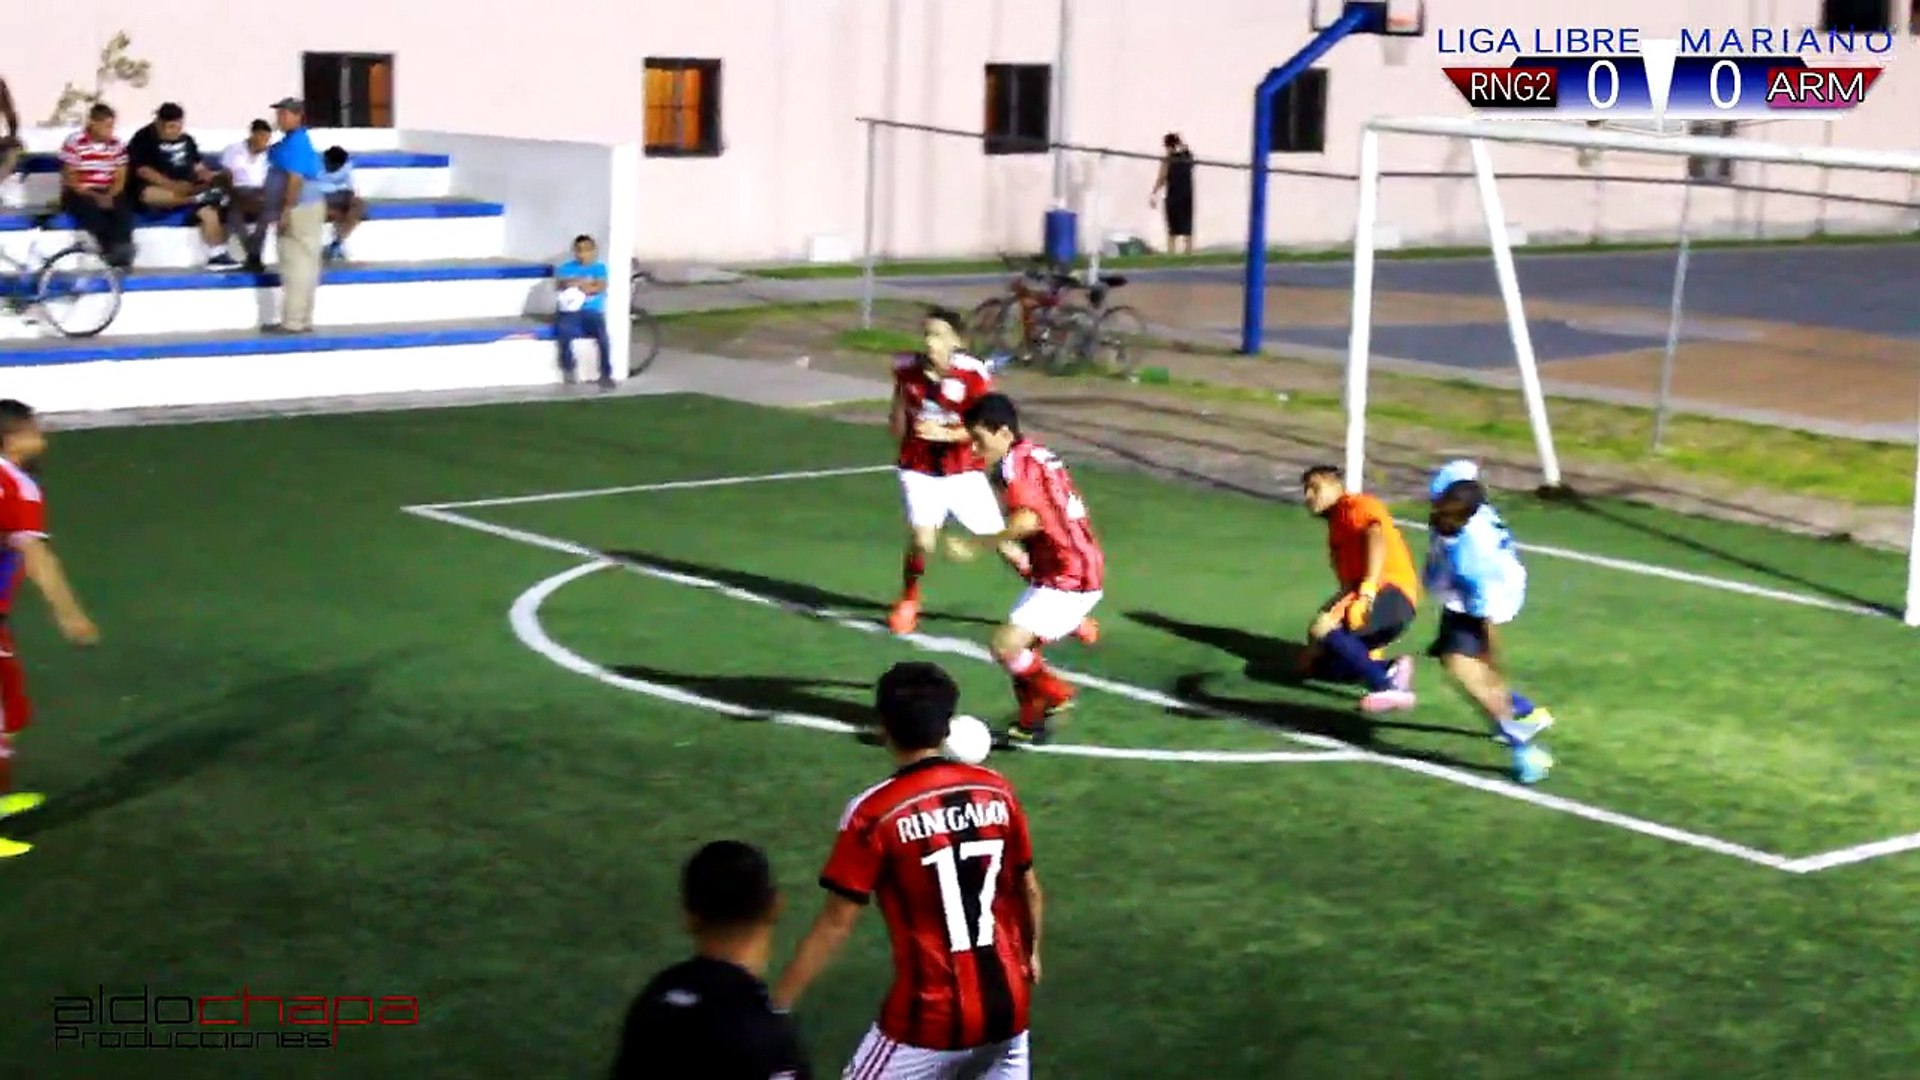 Real Renegados vs Los Armadillos -07 Mayo del 2015- en la Liga Libre Mariano